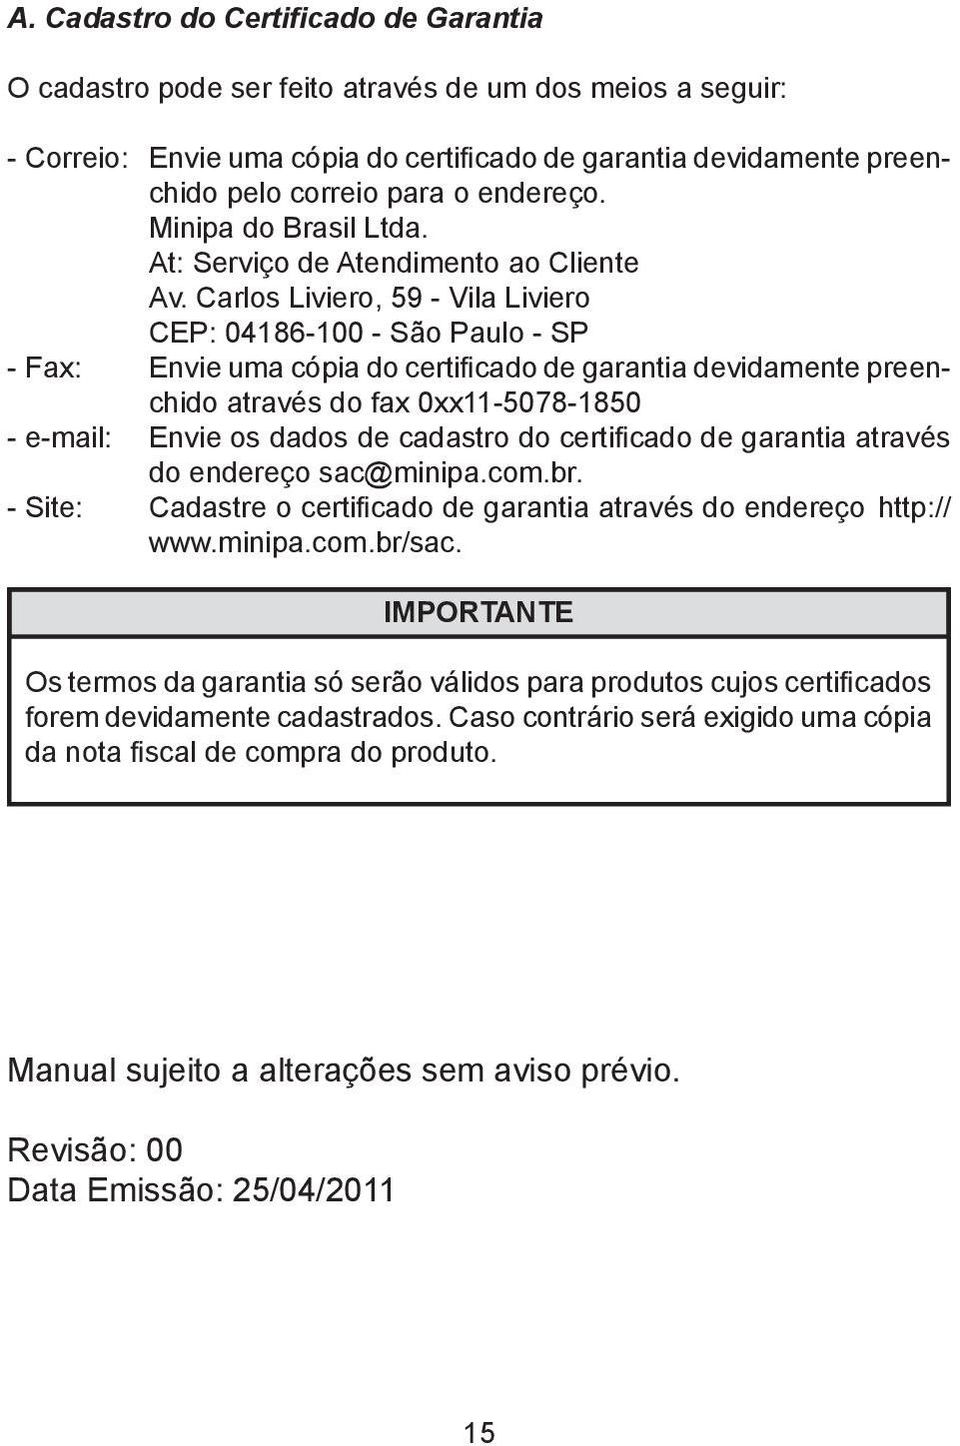 Carlos Liviero, 59 - Vila Liviero CEP: 04186-100 - São Paulo - SP - Fax: Envie uma cópia do certificado de garantia devidamente preenchido através do fax 0xx11-5078-1850 - e-mail: Envie os dados de